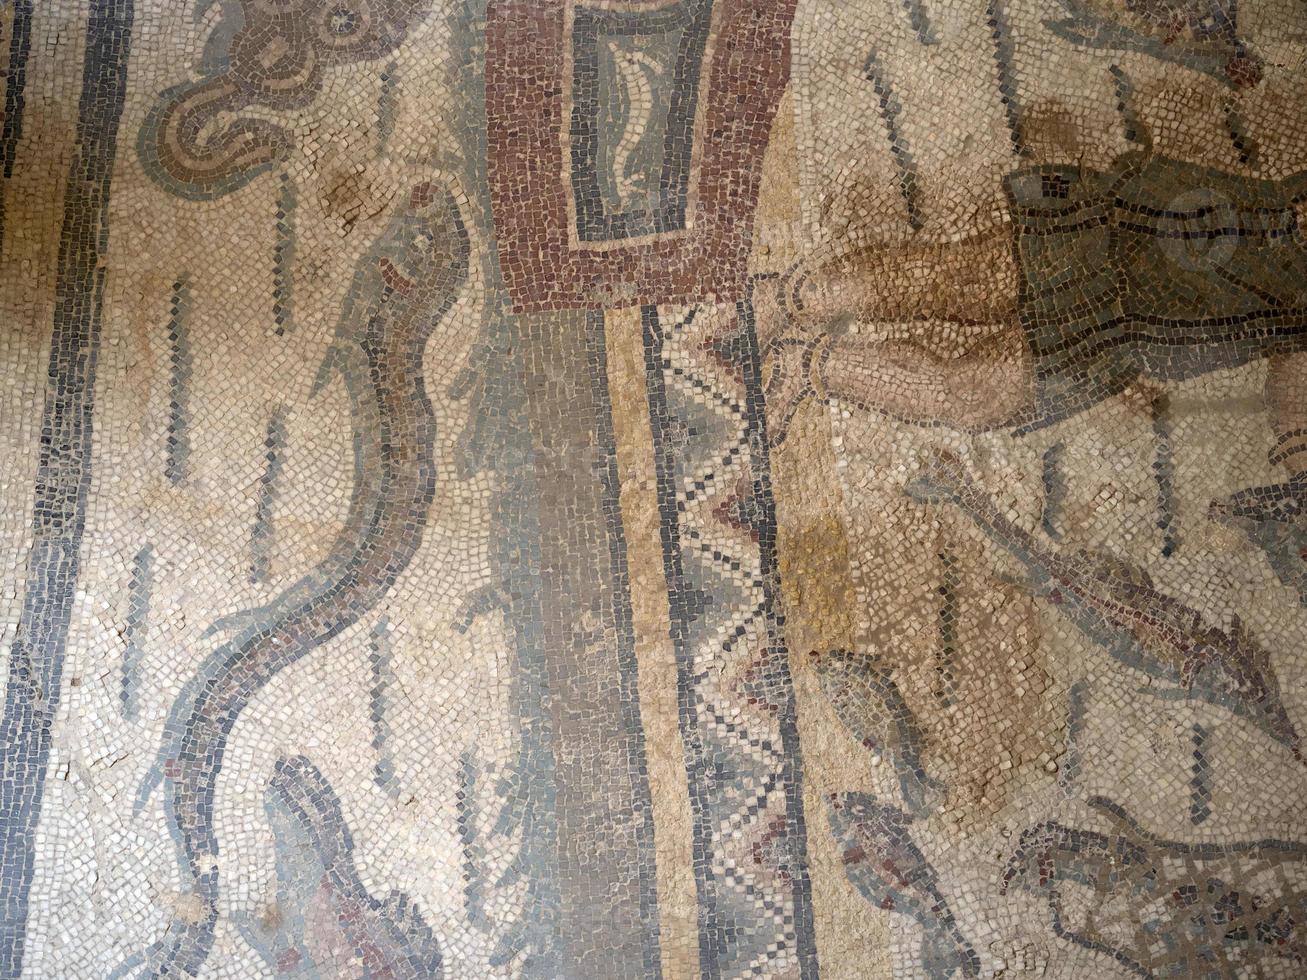 mosaïque romaine antique de la villa del casale, sicile photo